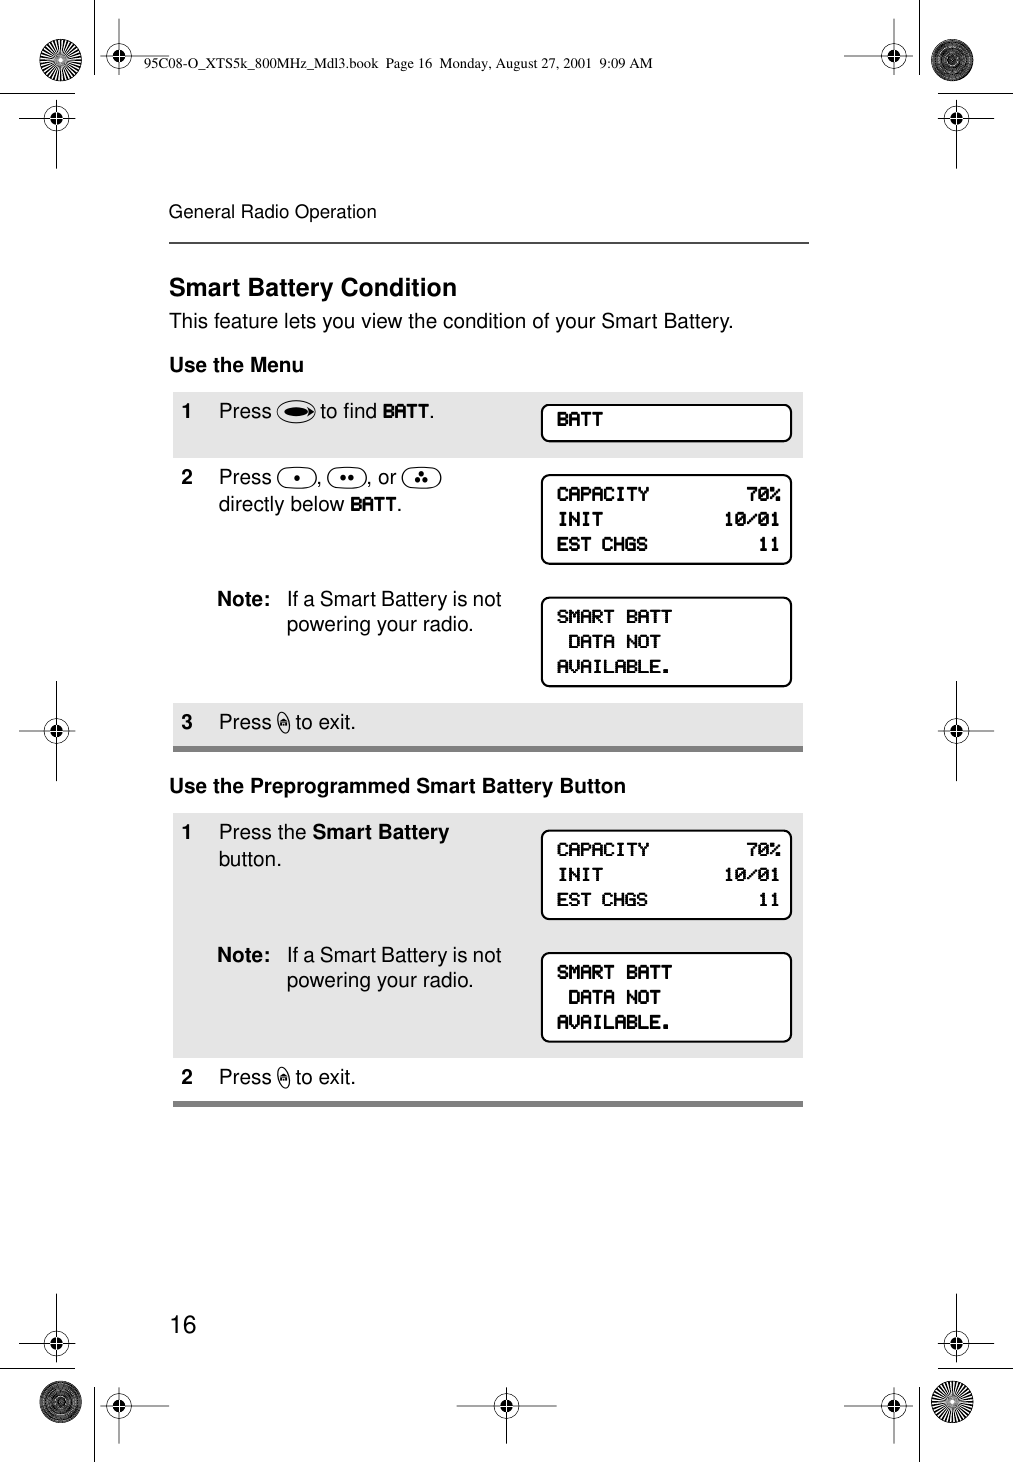 16General Radio OperationSmart Battery ConditionThis feature lets you view the condition of your Smart Battery.Use the MenuUse the Preprogrammed Smart Battery Button1Press U to ﬁnd BBBBAAAATTTTTTTT.2Press D, E, or F directly below BBBBAAAATTTTTTTT.Note: If a Smart Battery is not powering your radio.3Press h to exit.1Press the Smart Battery button.Note: If a Smart Battery is not powering your radio.2Press h to exit.BBBBAAAATTTTTTTTCCCCAAAAPPPPAAAACCCCIIIITTTTYYYY                                    77770000%%%%IIIINNNNIIIITTTT                                            11110000////00001111EEEESSSSTTTT    CCCCHHHHGGGGSSSS                                            11111111SSSSMMMMAAAARRRRTTTT    BBBBAAAATTTTTTTT    DDDDAAAATTTTAAAA    NNNNOOOOTTTTAAAAVVVVAAAAIIIILLLLAAAABBBBLLLLEEEE....CCCCAAAAPPPPAAAACCCCIIIITTTTYYYY                                    77770000%%%%IIIINNNNIIIITTTT                                            11110000////00001111EEEESSSSTTTT    CCCCHHHHGGGGSSSS                                            11111111SSSSMMMMAAAARRRRTTTT    BBBBAAAATTTTTTTT    DDDDAAAATTTTAAAA    NNNNOOOOTTTTAAAAVVVVAAAAIIIILLLLAAAABBBBLLLLEEEE....95C08-O_XTS5k_800MHz_Mdl3.book  Page 16  Monday, August 27, 2001  9:09 AM